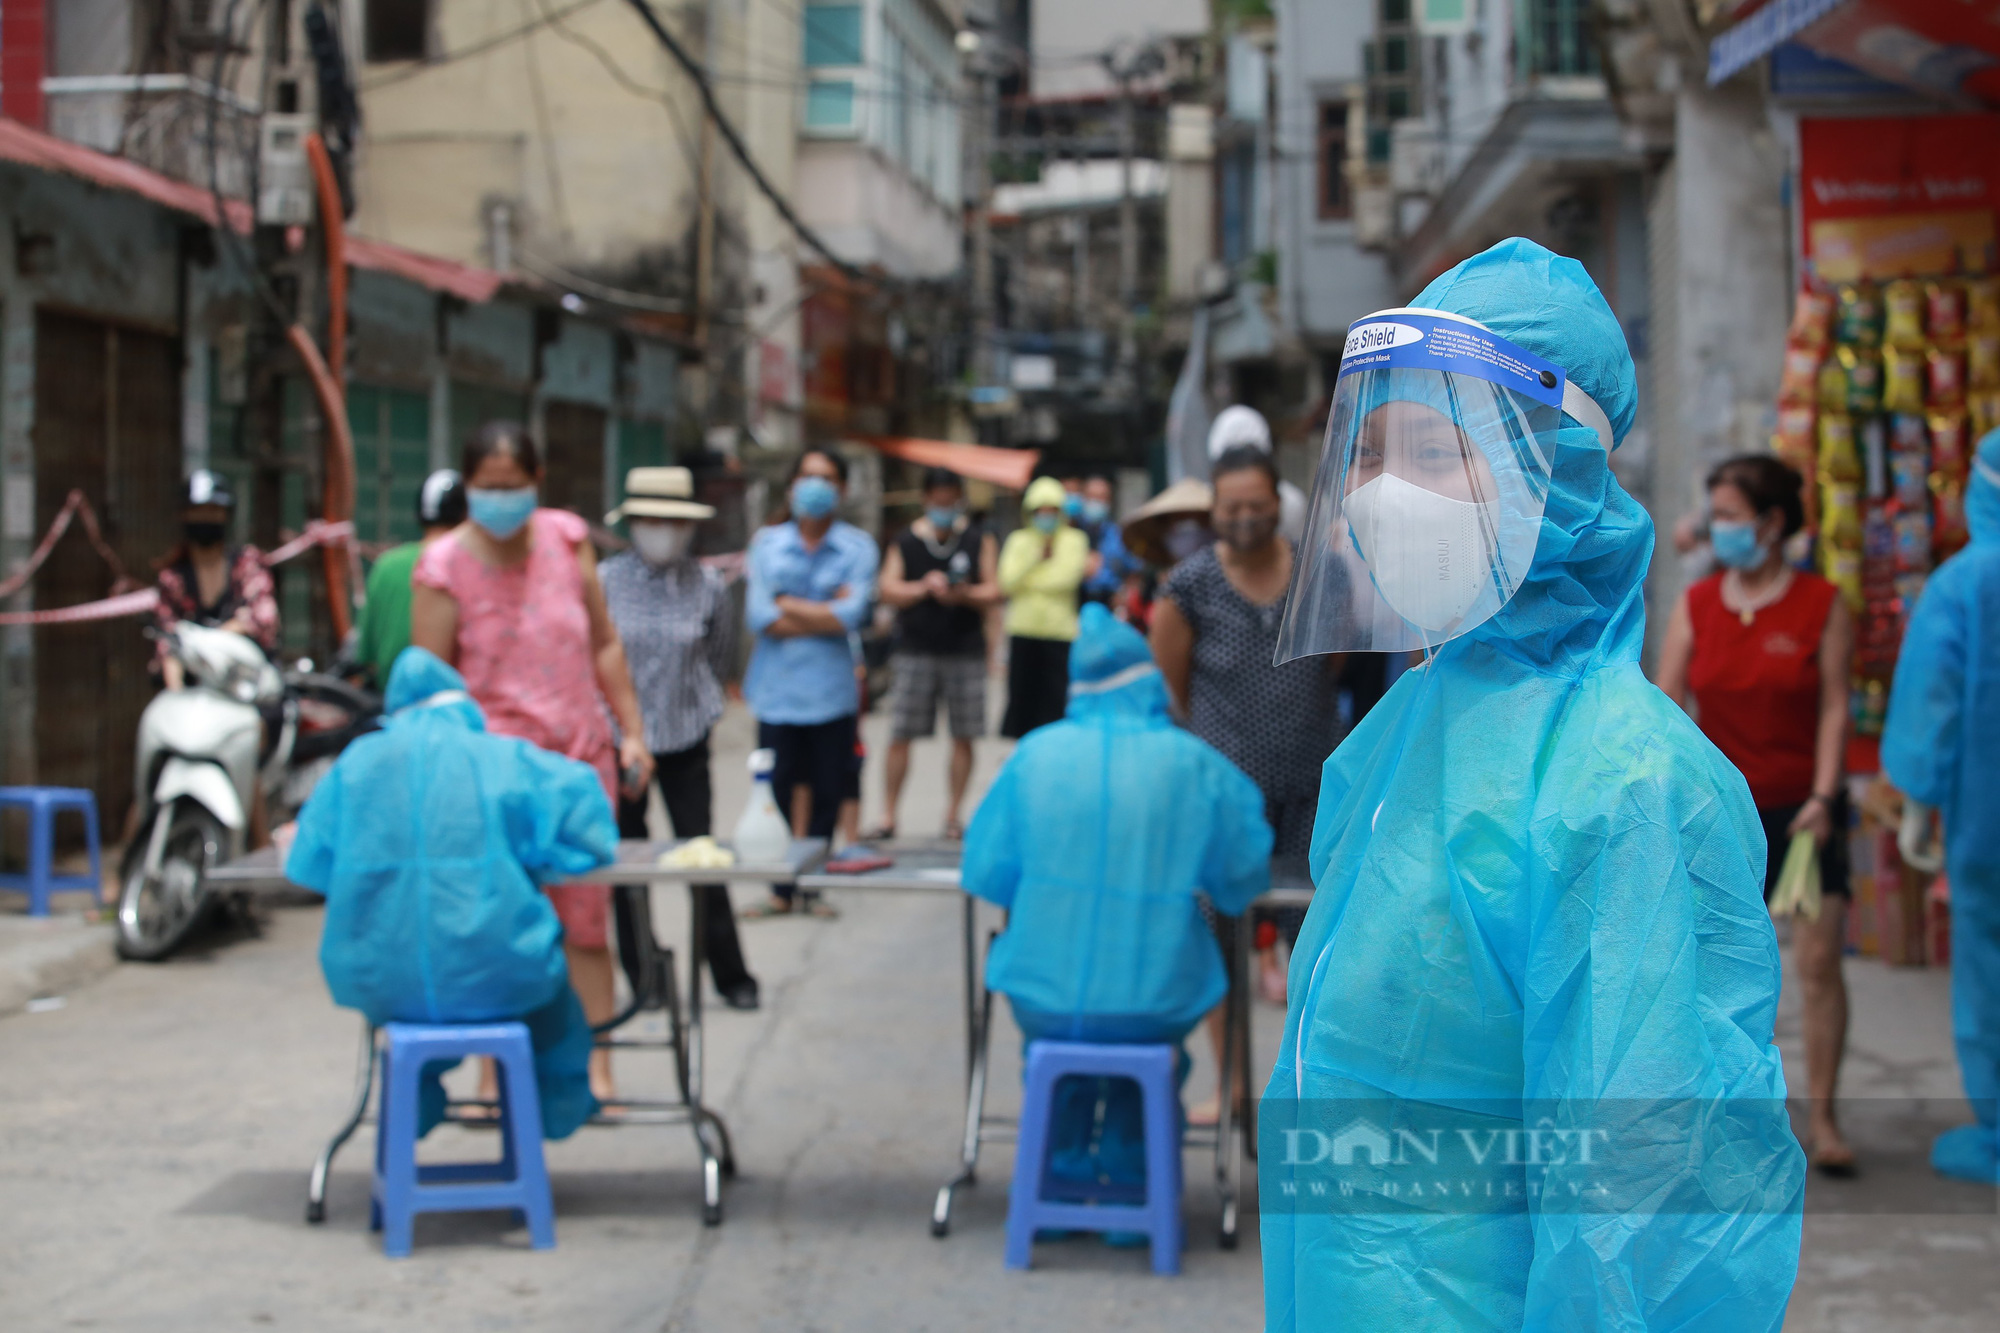 Nhân viên lò mổ Minh Hiền dương tính SARS-CoV-2, Hà Nội thông báo khẩn tìm người từng đến - Ảnh 3.